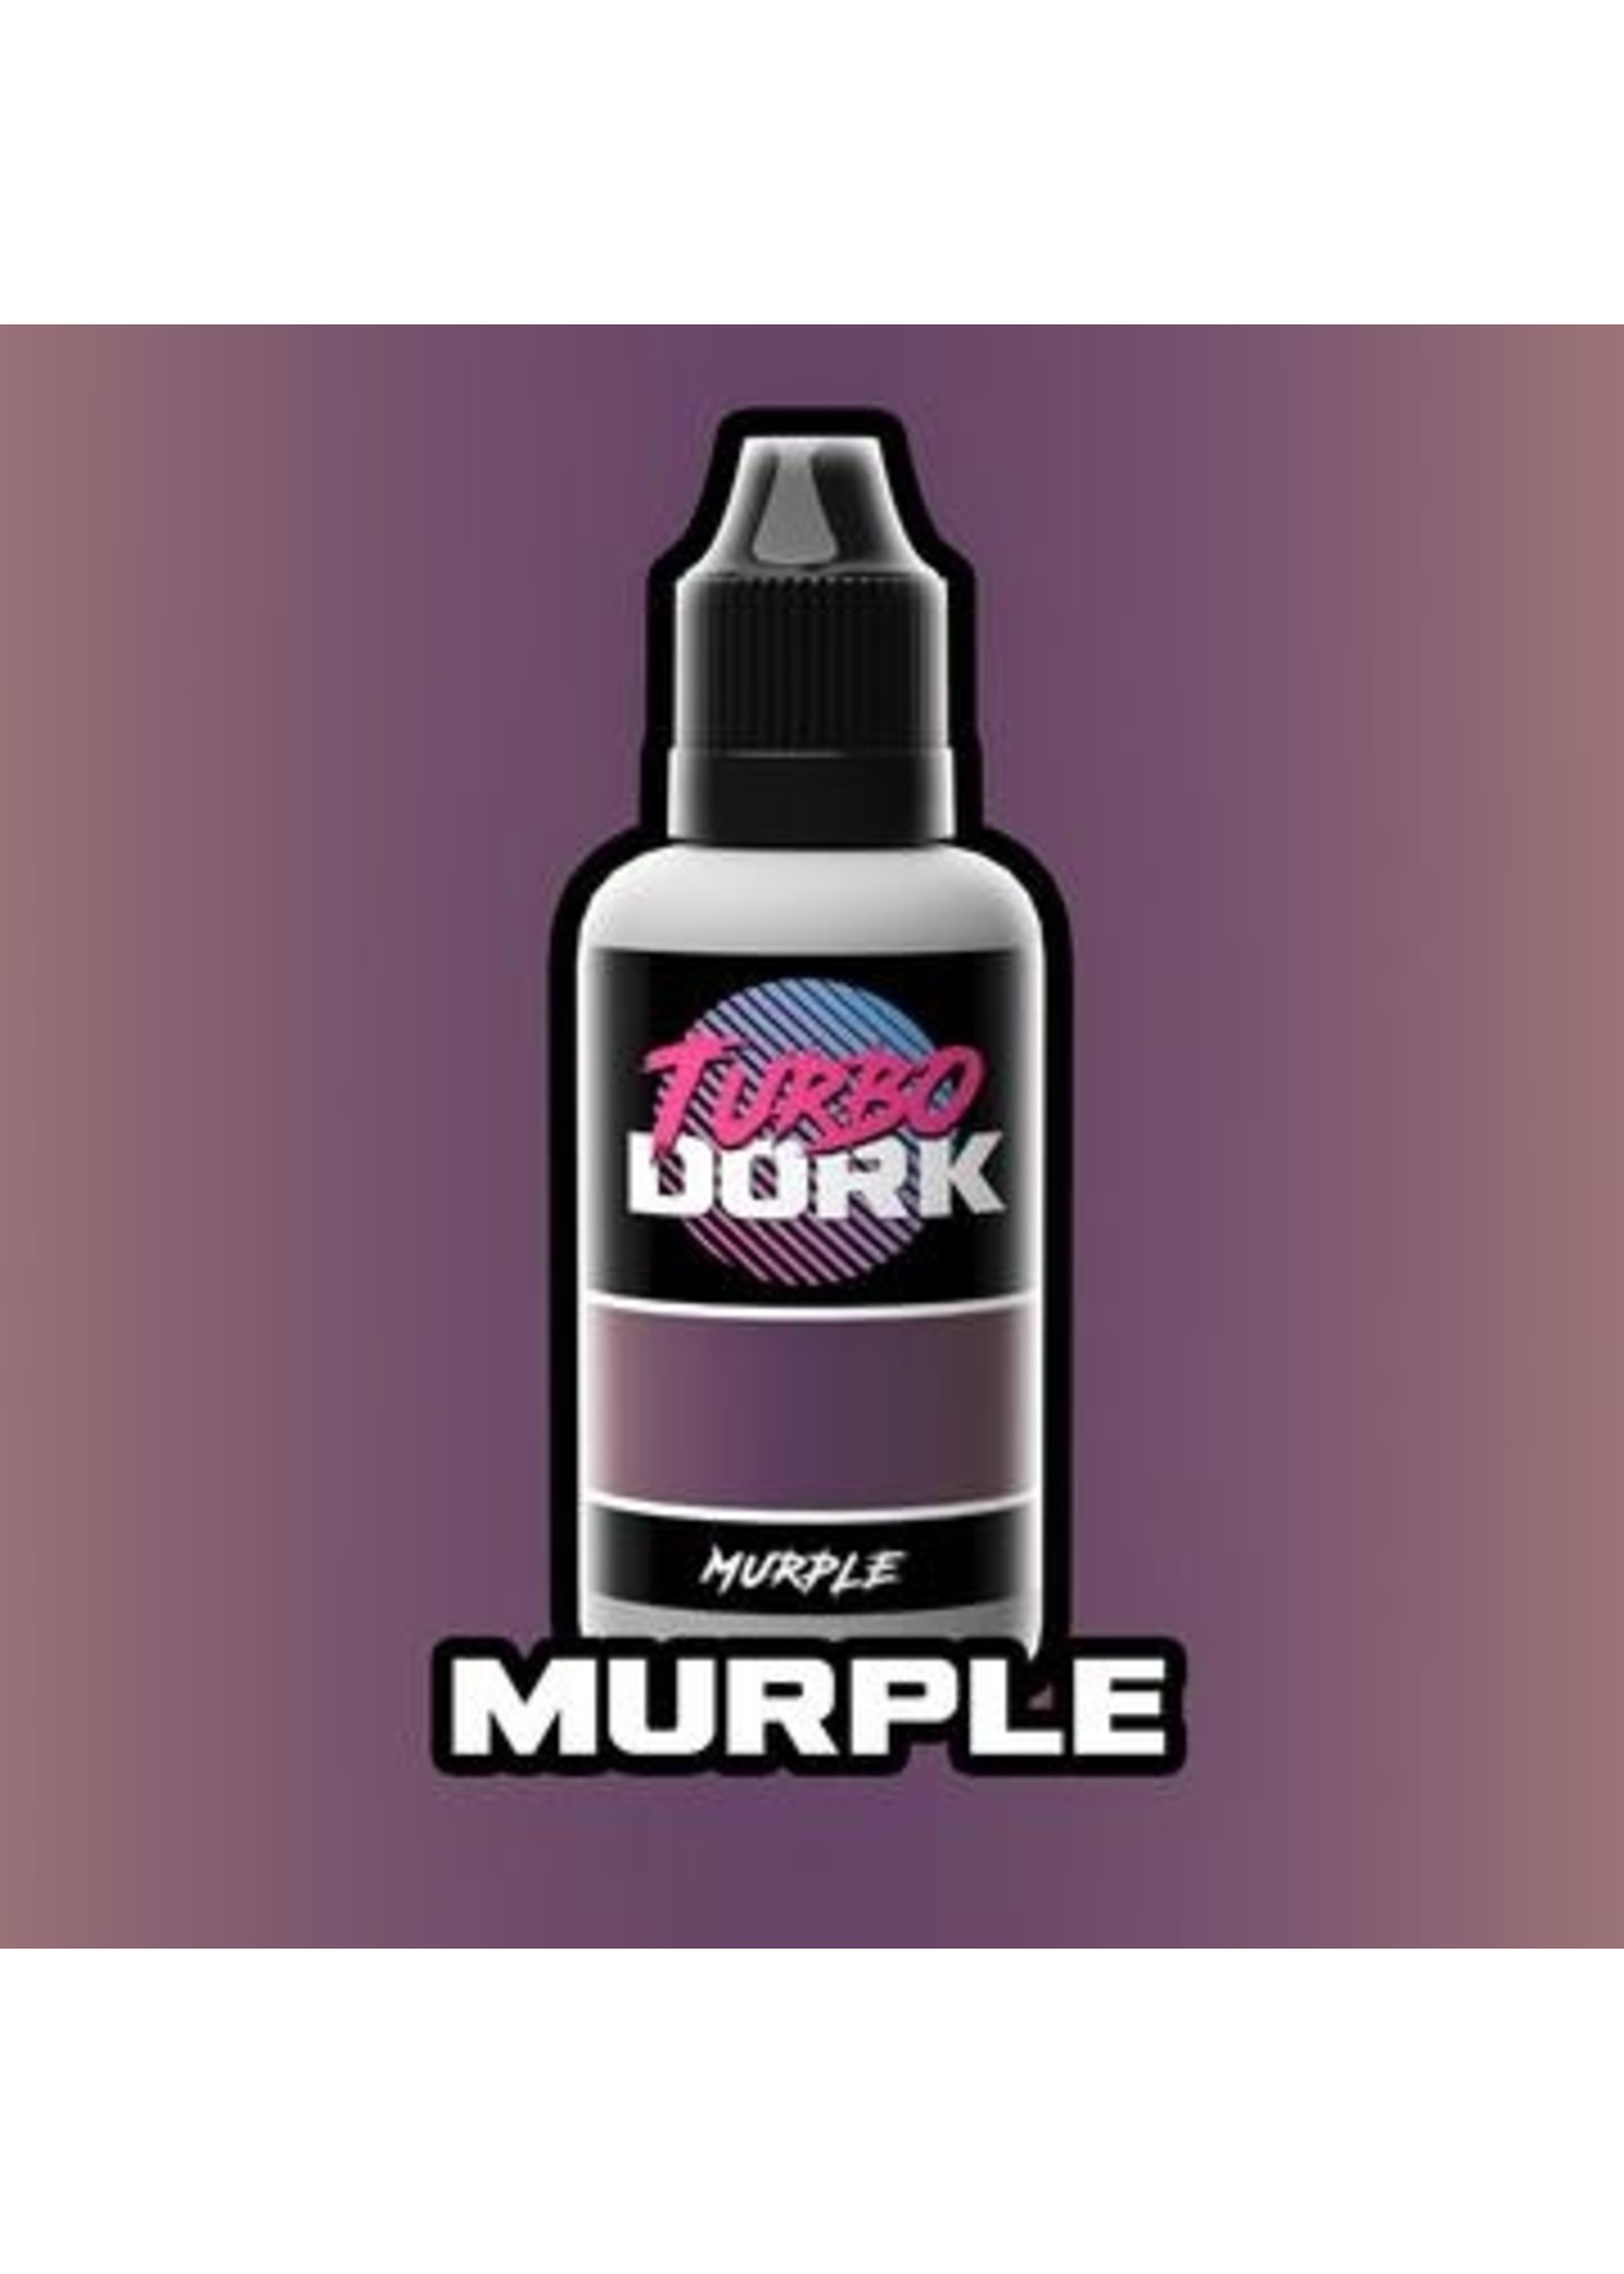 Turbo Dork Murple Metallic Acrylic Paint - 20ml Bottle